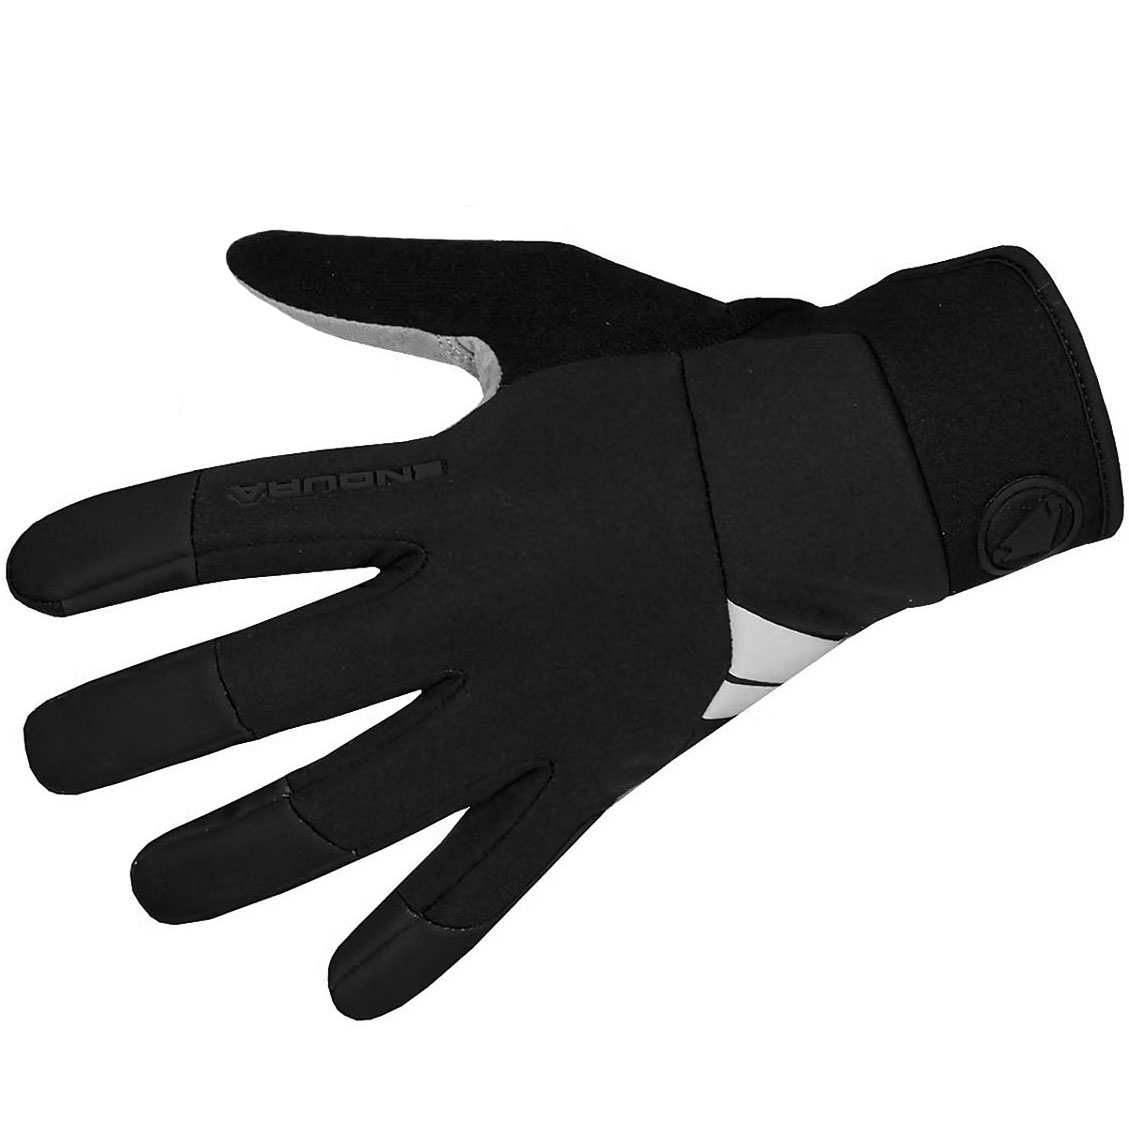 Produktbild von Endura Windchill Handschuhe Damen - schwarz